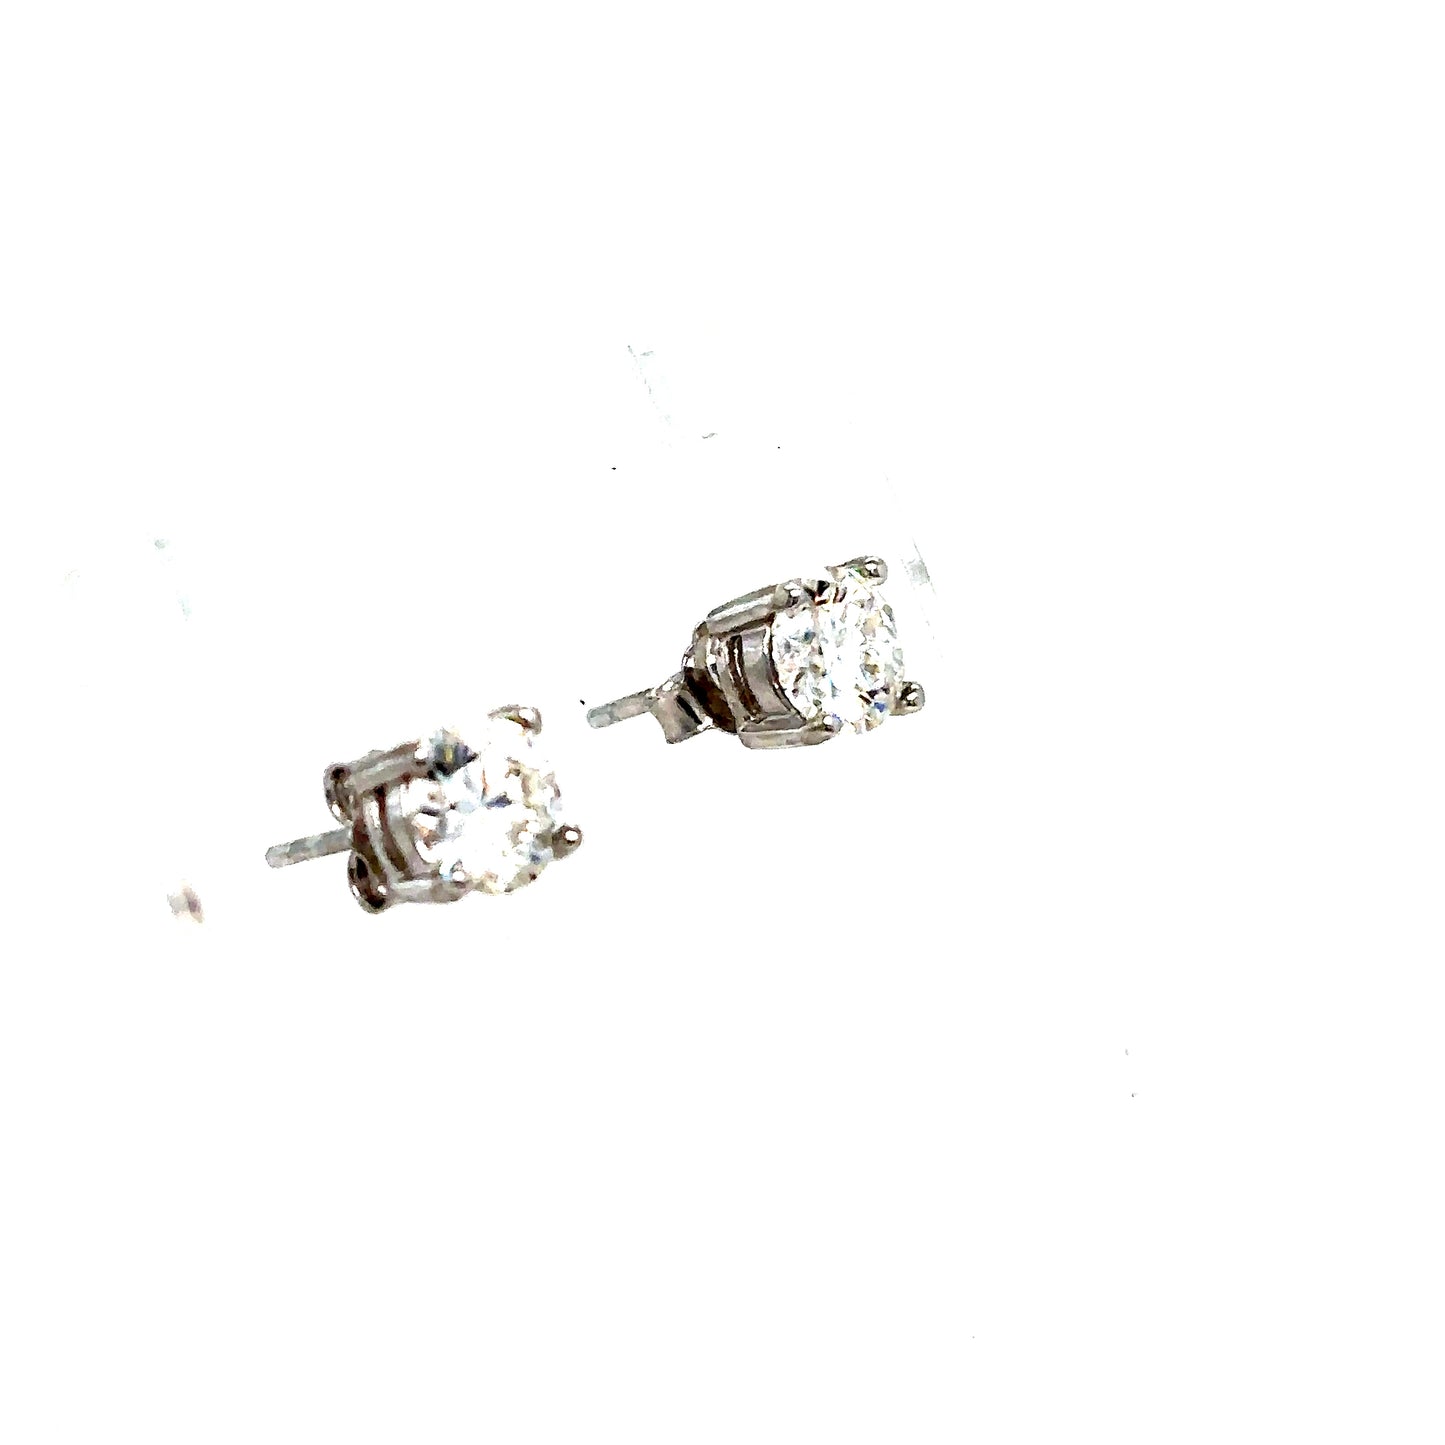 925 S.S. Solitaire Moissanite Earrings